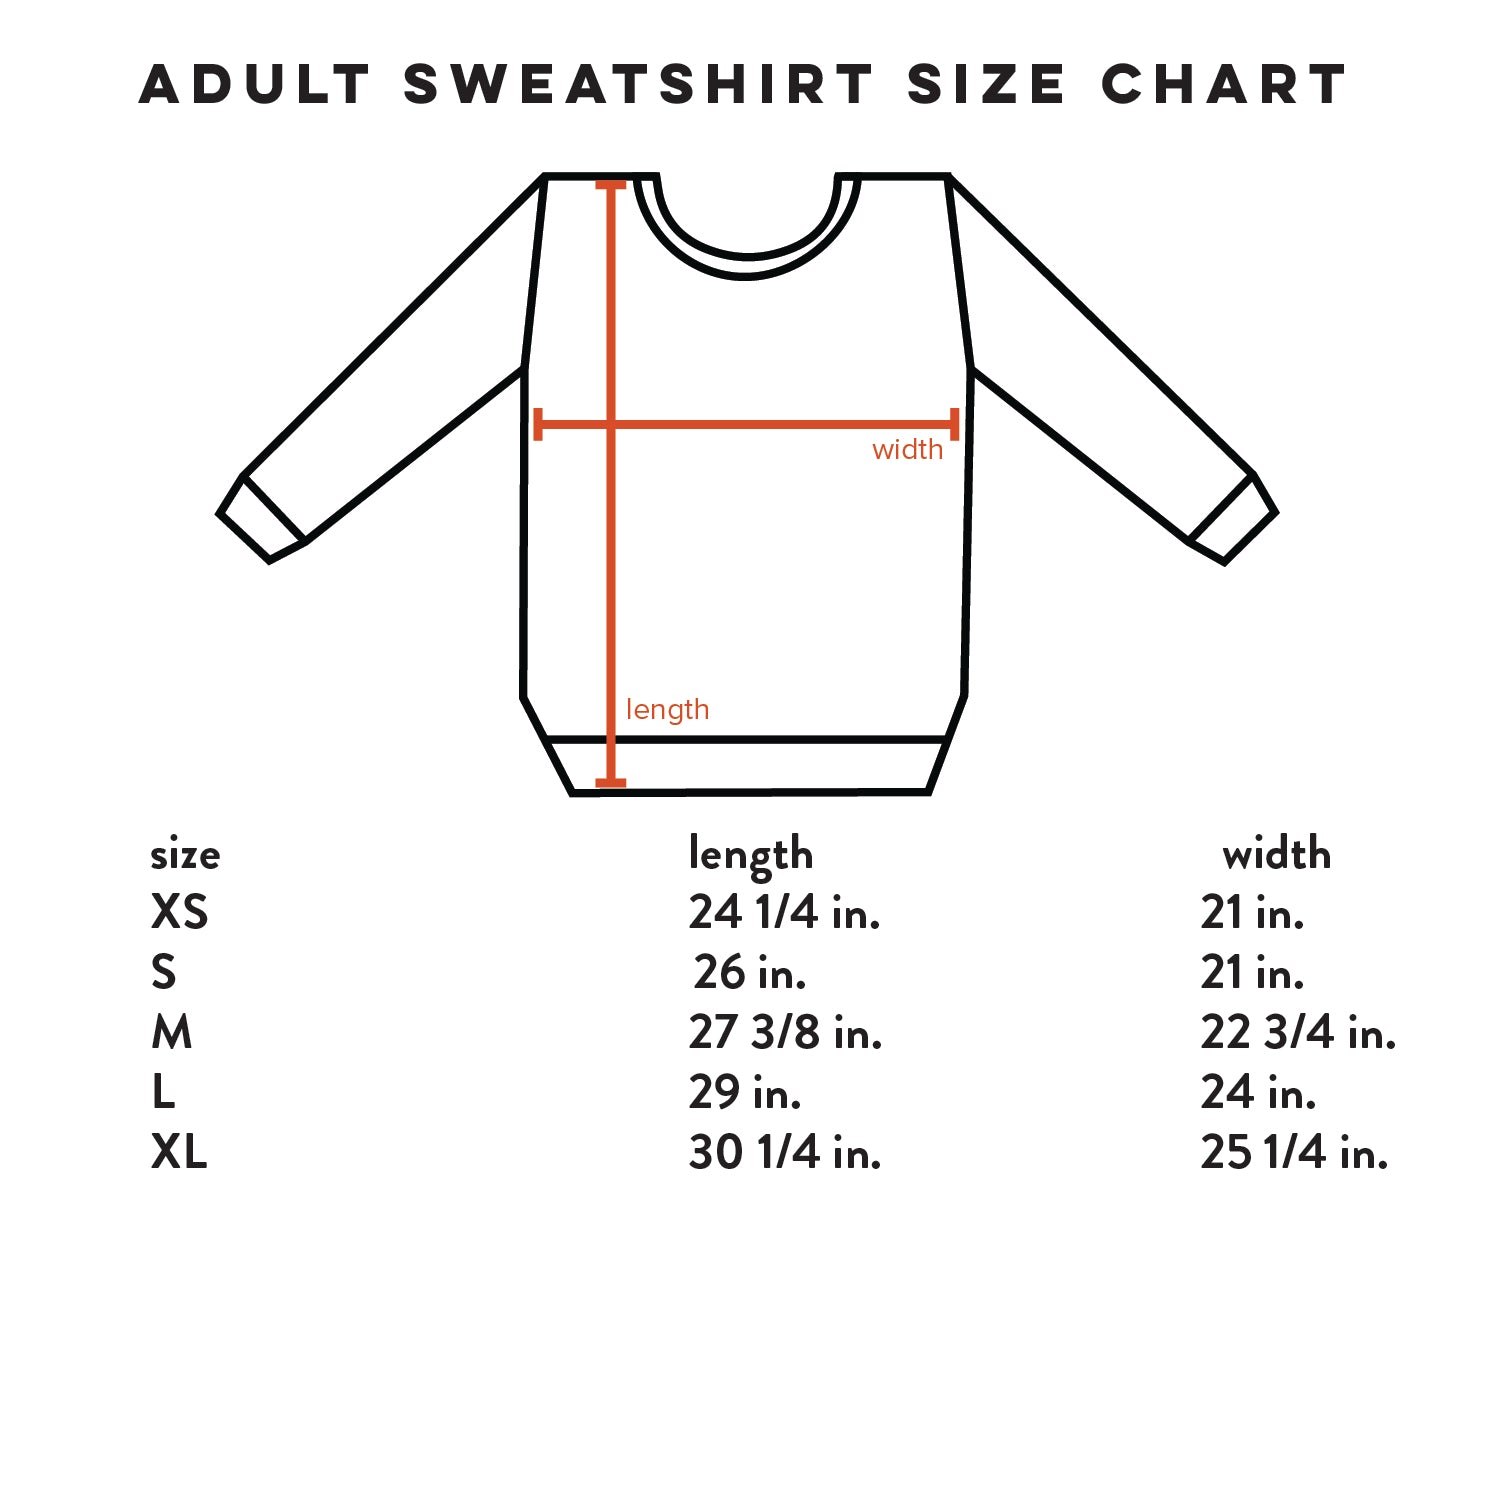 Boba Baby + Kids + Adult Sweatshirt